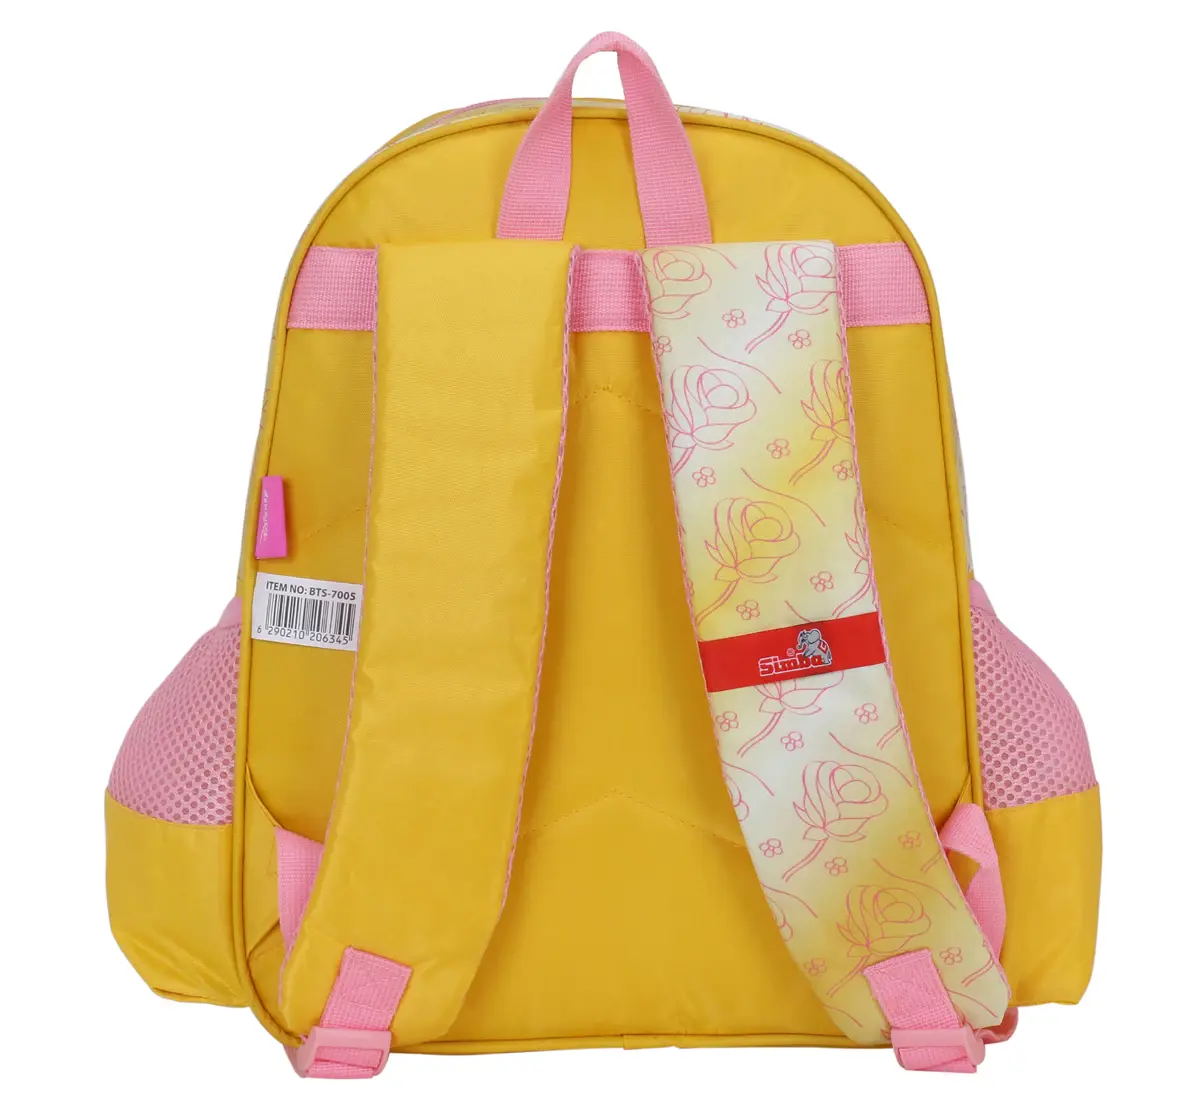 Simba Princess Big Dreams 16 Backpack Multicolor 3Y+